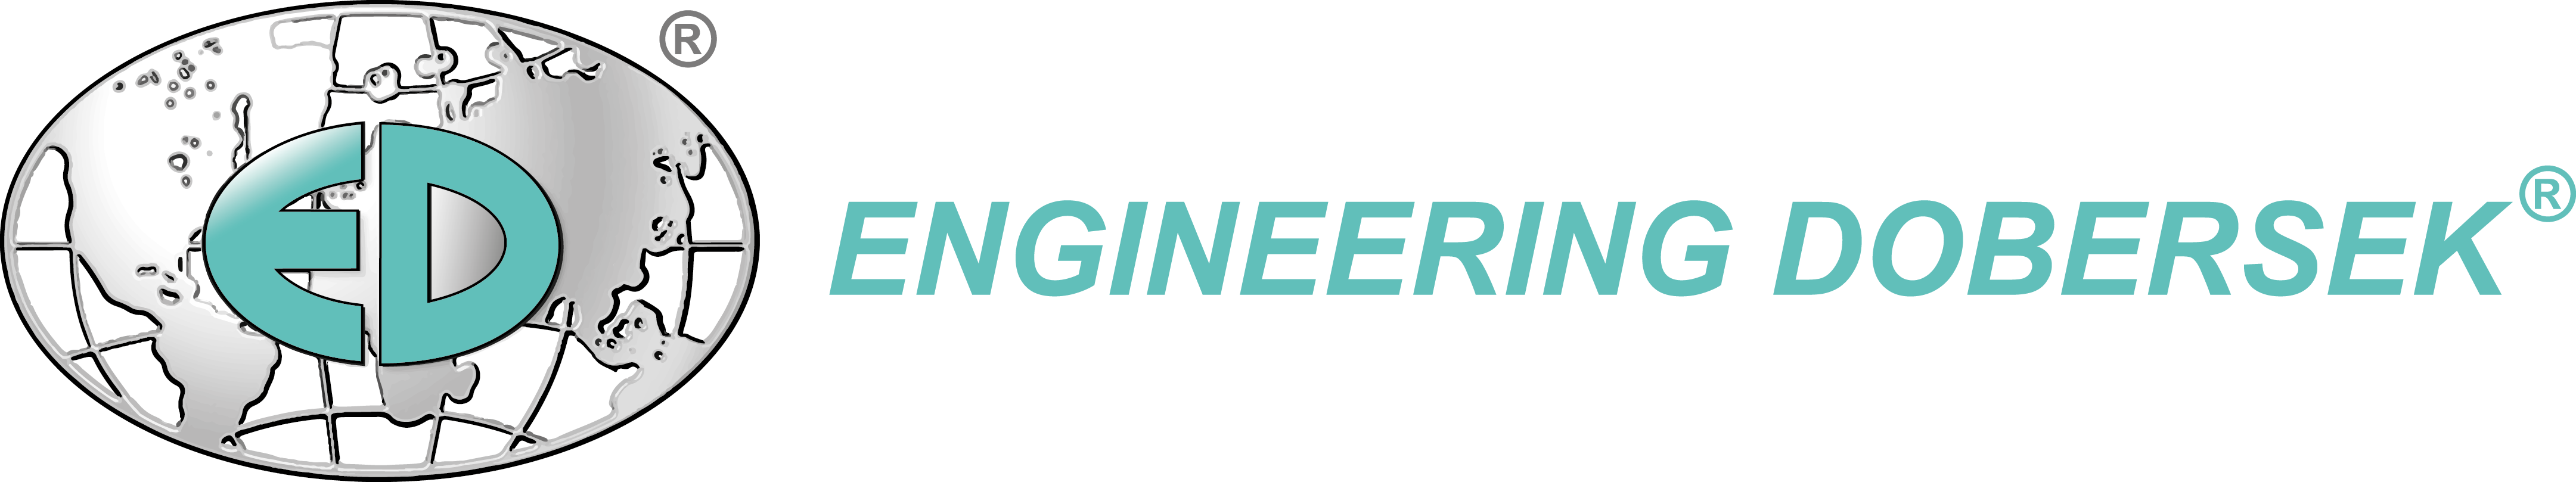 Engineering Dobersek GmbH